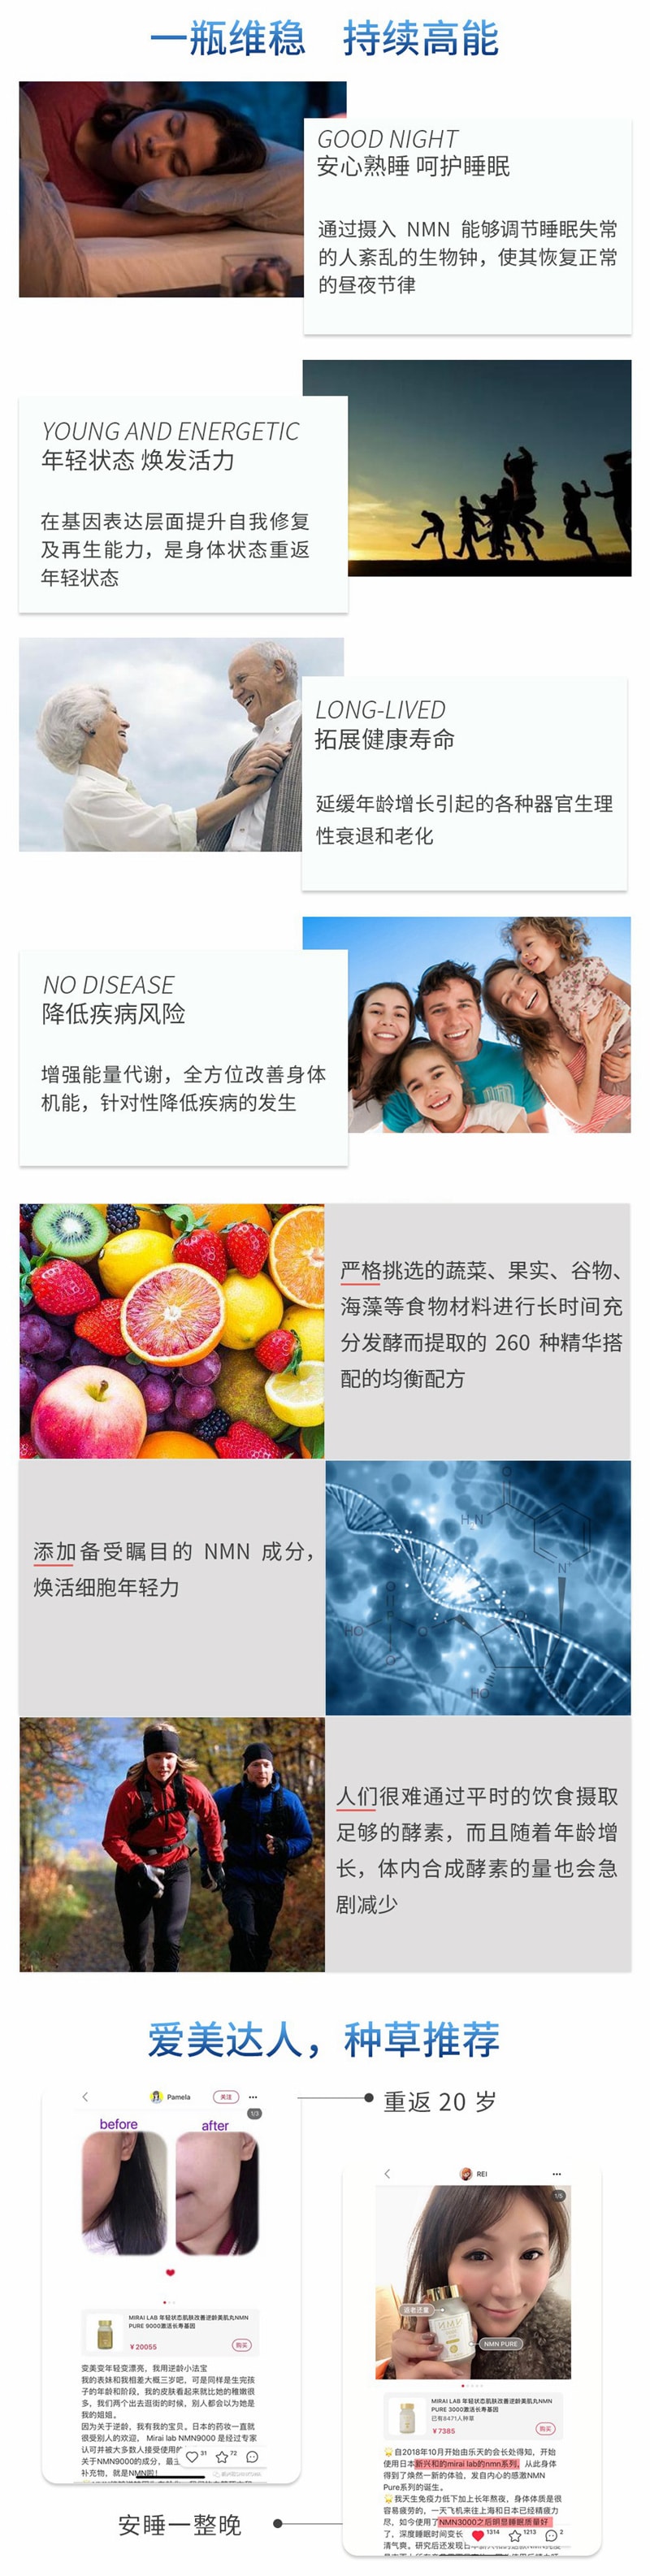 【日本直郵】興和製藥 MIRAI LAB NMN3000 高純度抗衰老 逆齡丸